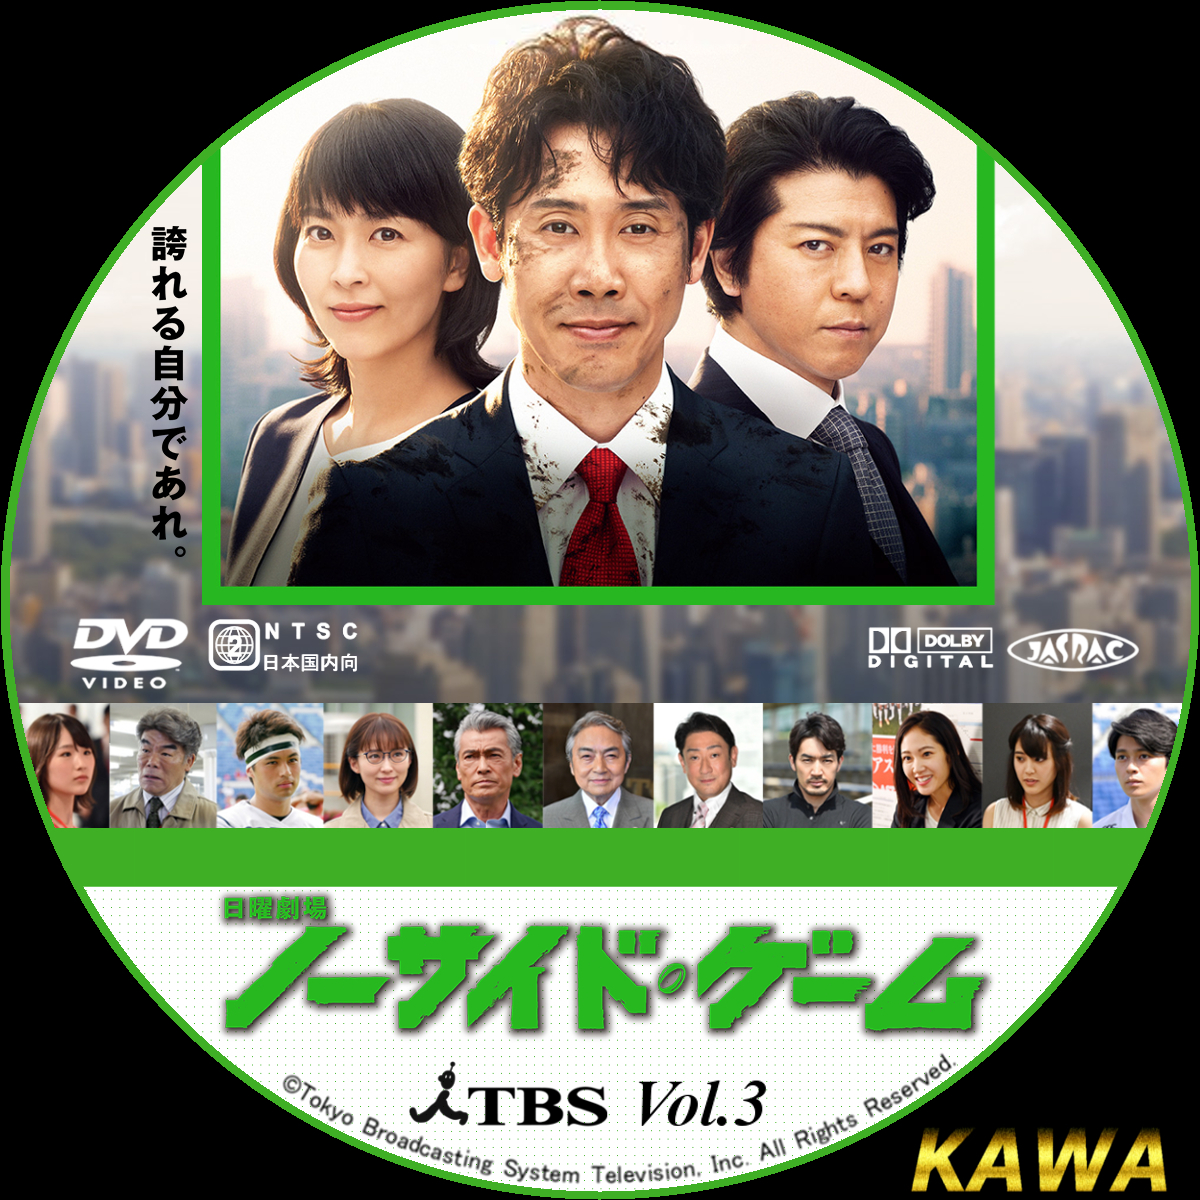 ノーサイド・ゲーム DVD 全5巻 全巻セット - 邦画・日本映画